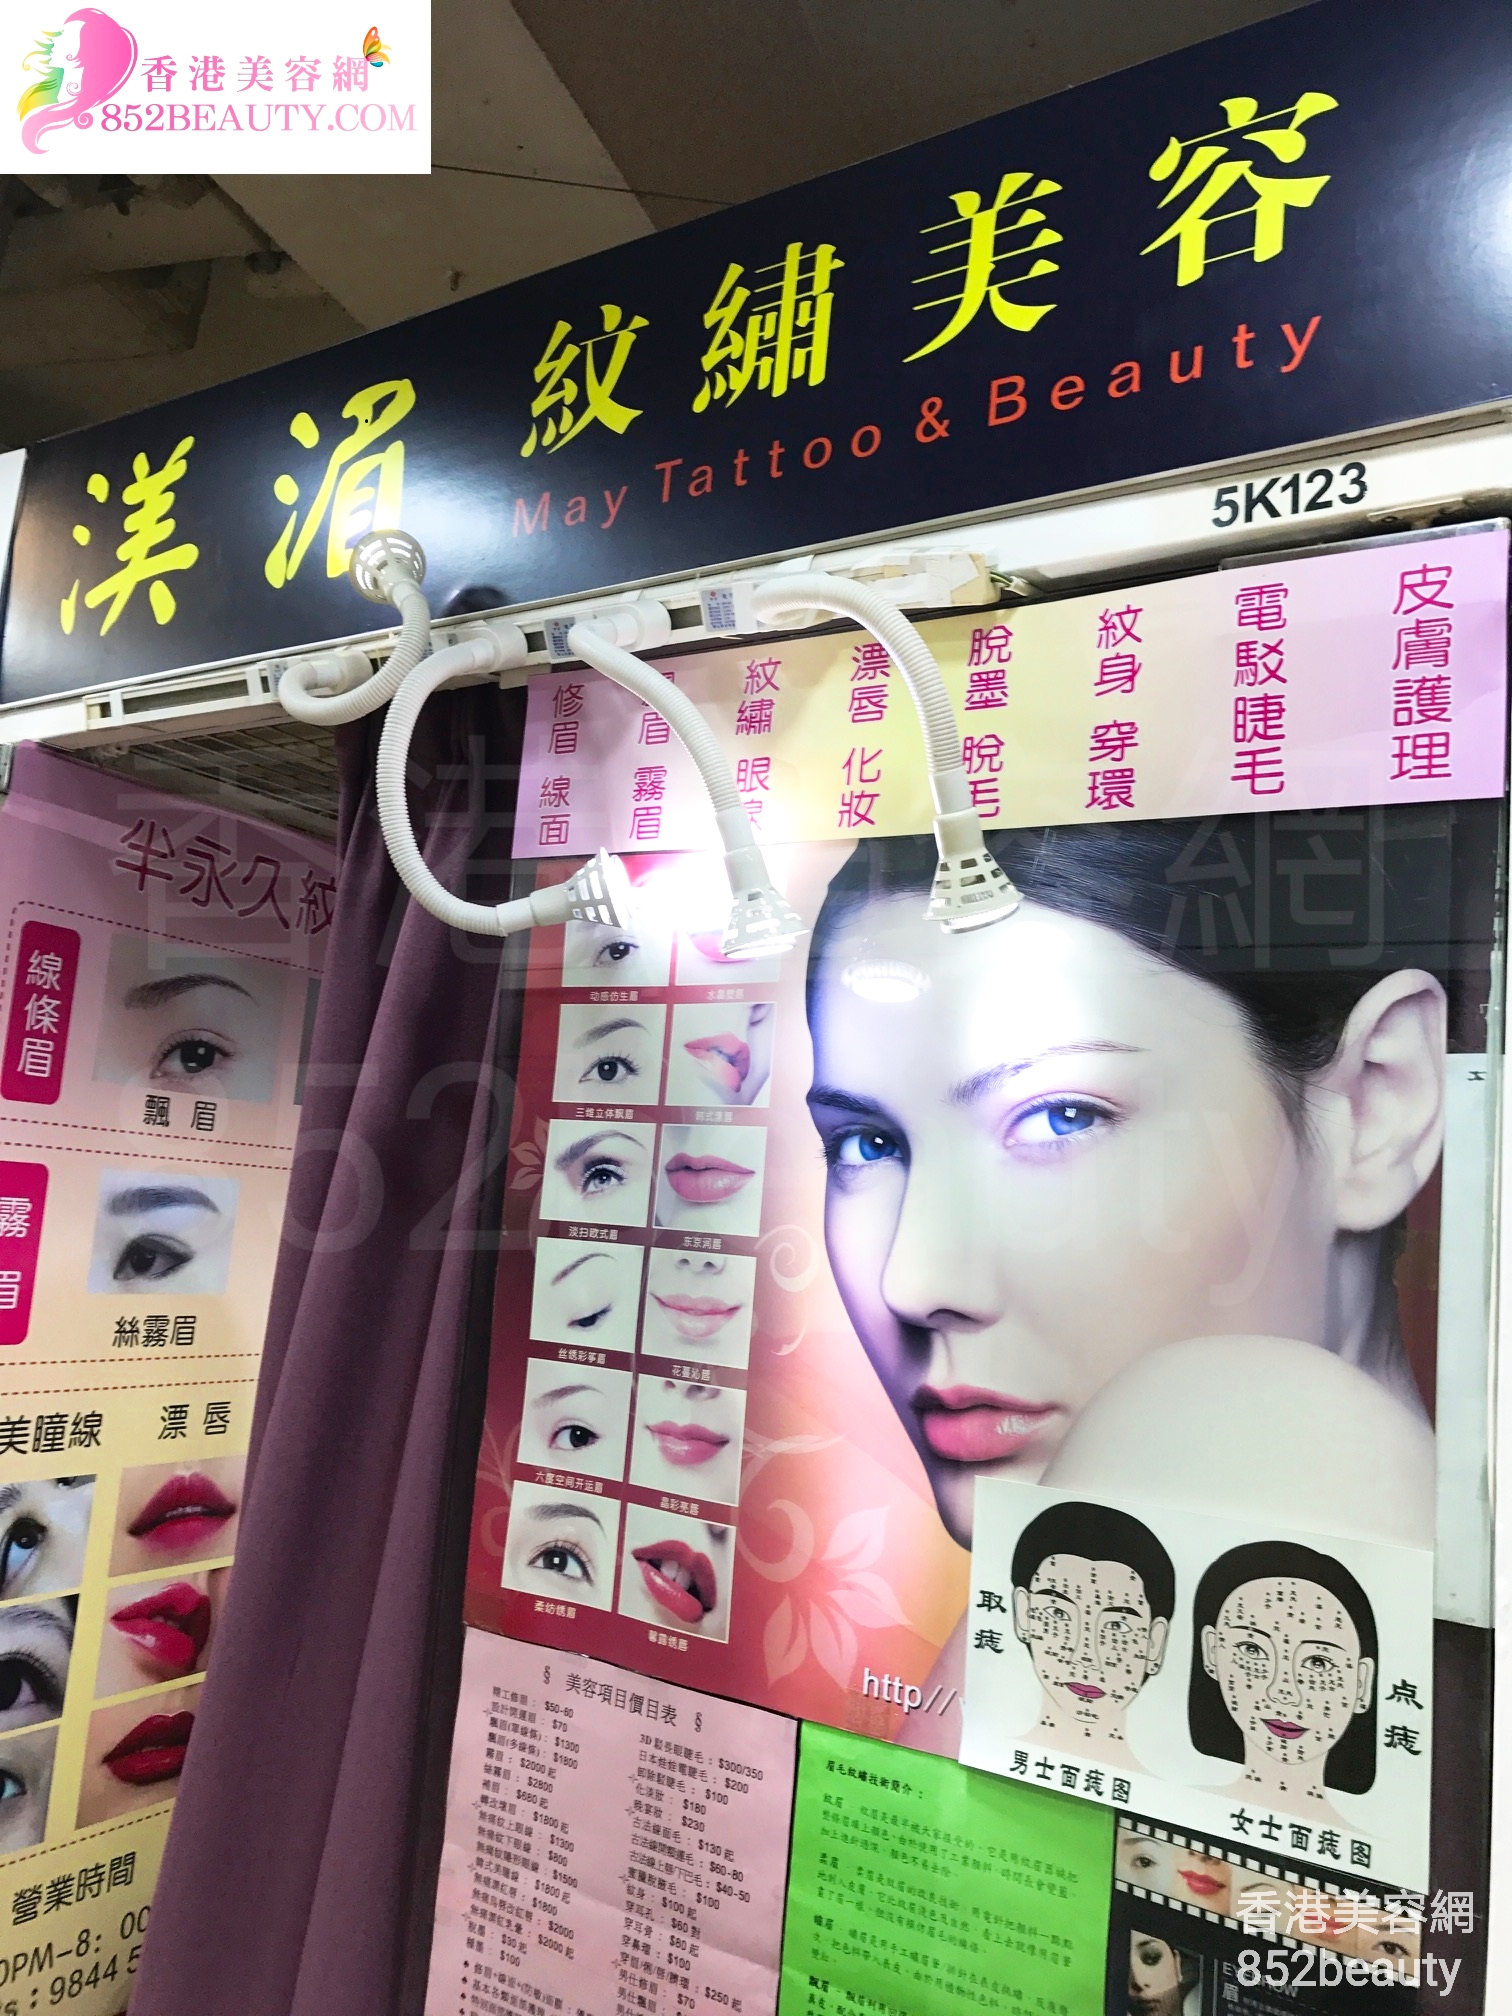 香港美容網 Hong Kong Beauty Salon 美容院 / 美容師: 渼湄 紋繡美容